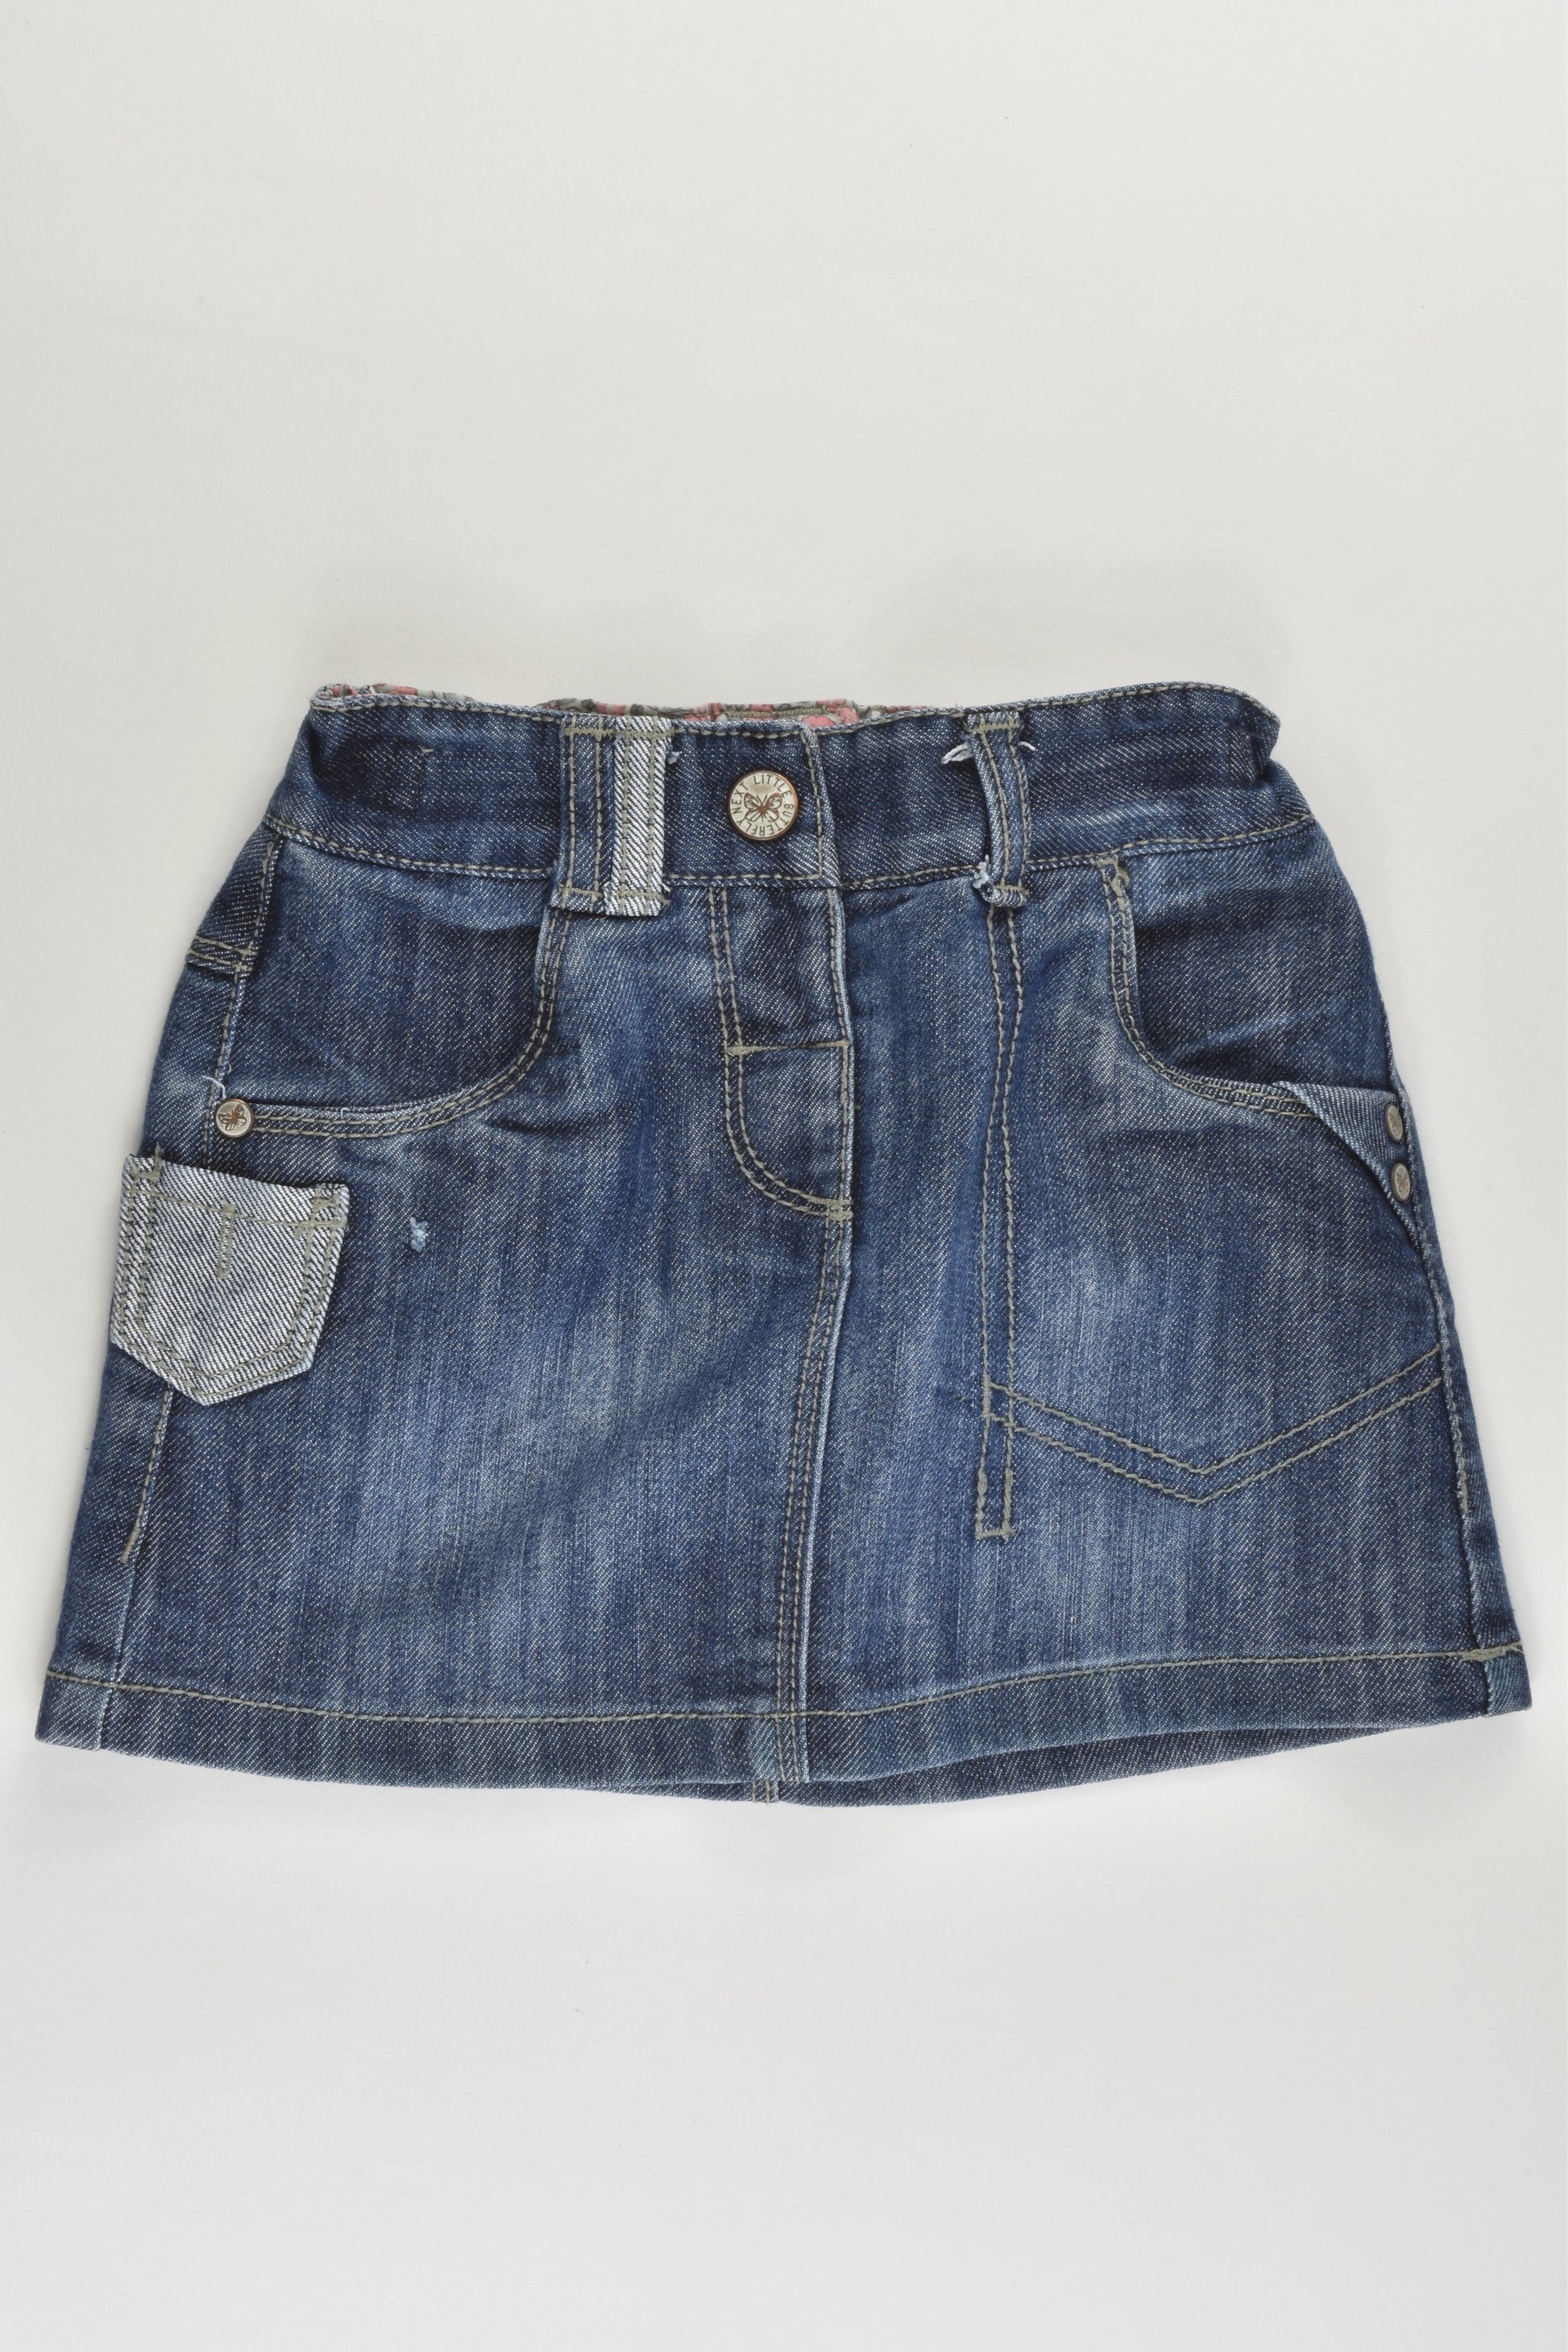 Next (UK) Size 2 (92 cm) Stretchy Denim Skirt